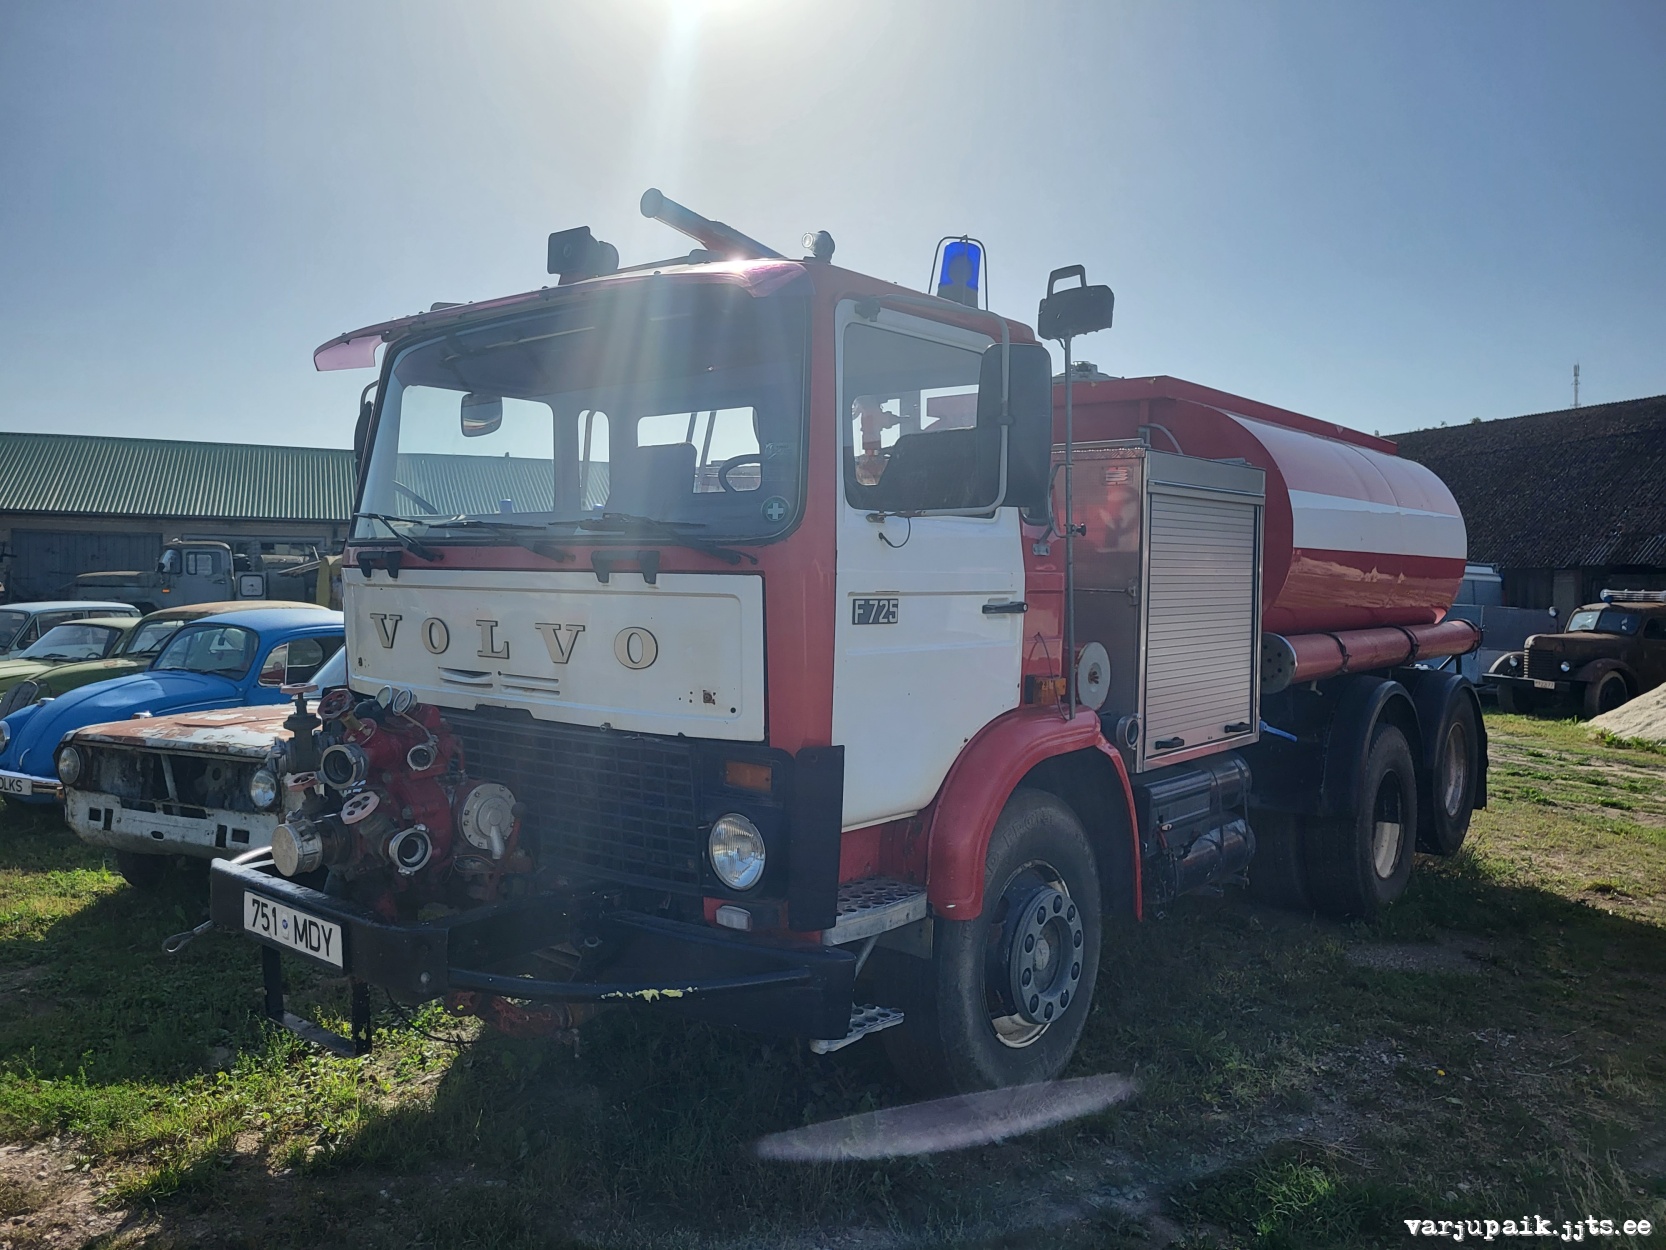 Tuletõrjeauto Volvo F7 6x2